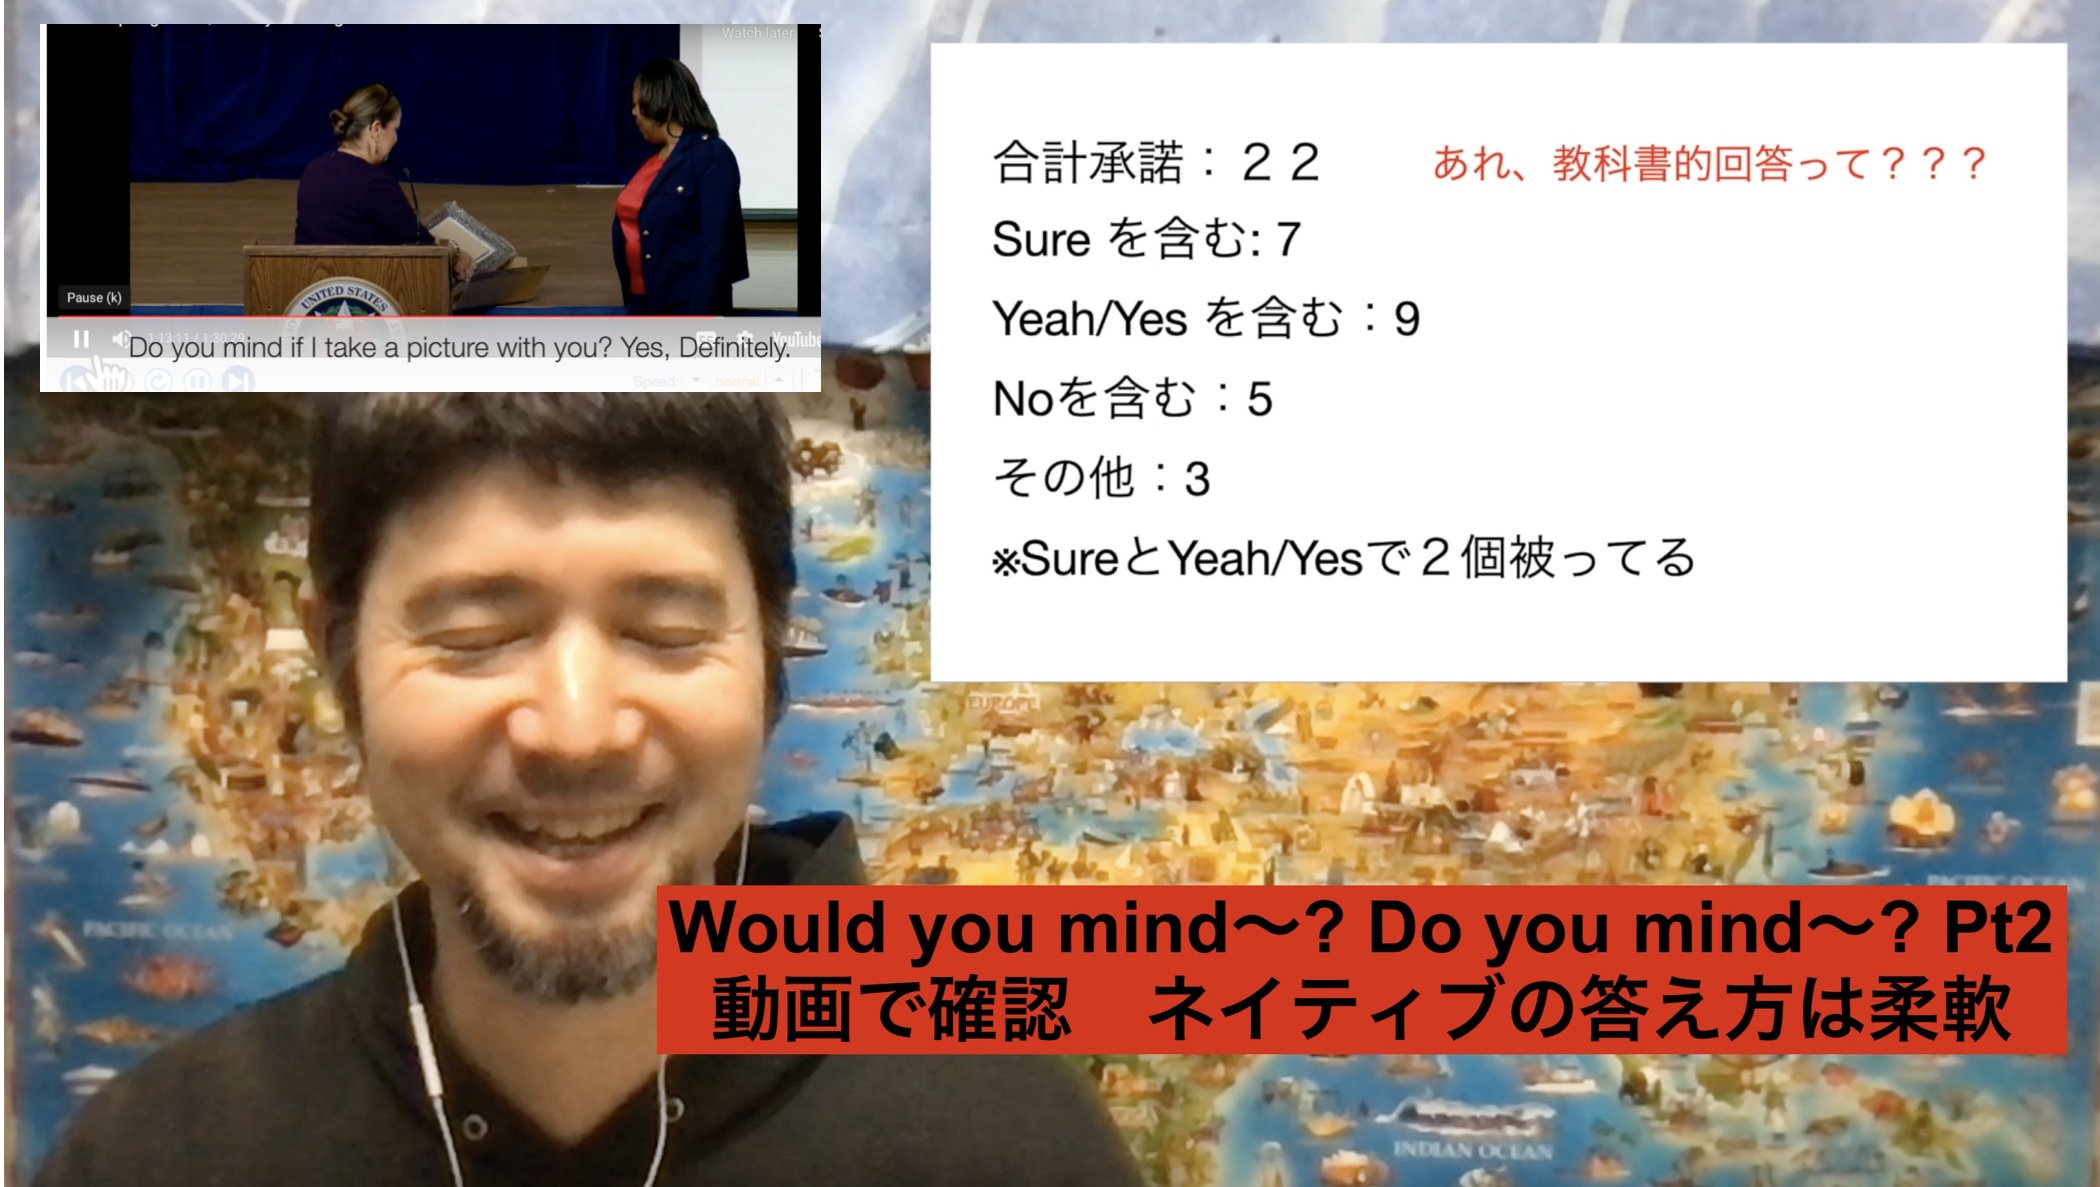 【動画】Would you mind〜? Do you mind〜? Pt2 動画で確認　ネイティブの答え方は柔軟